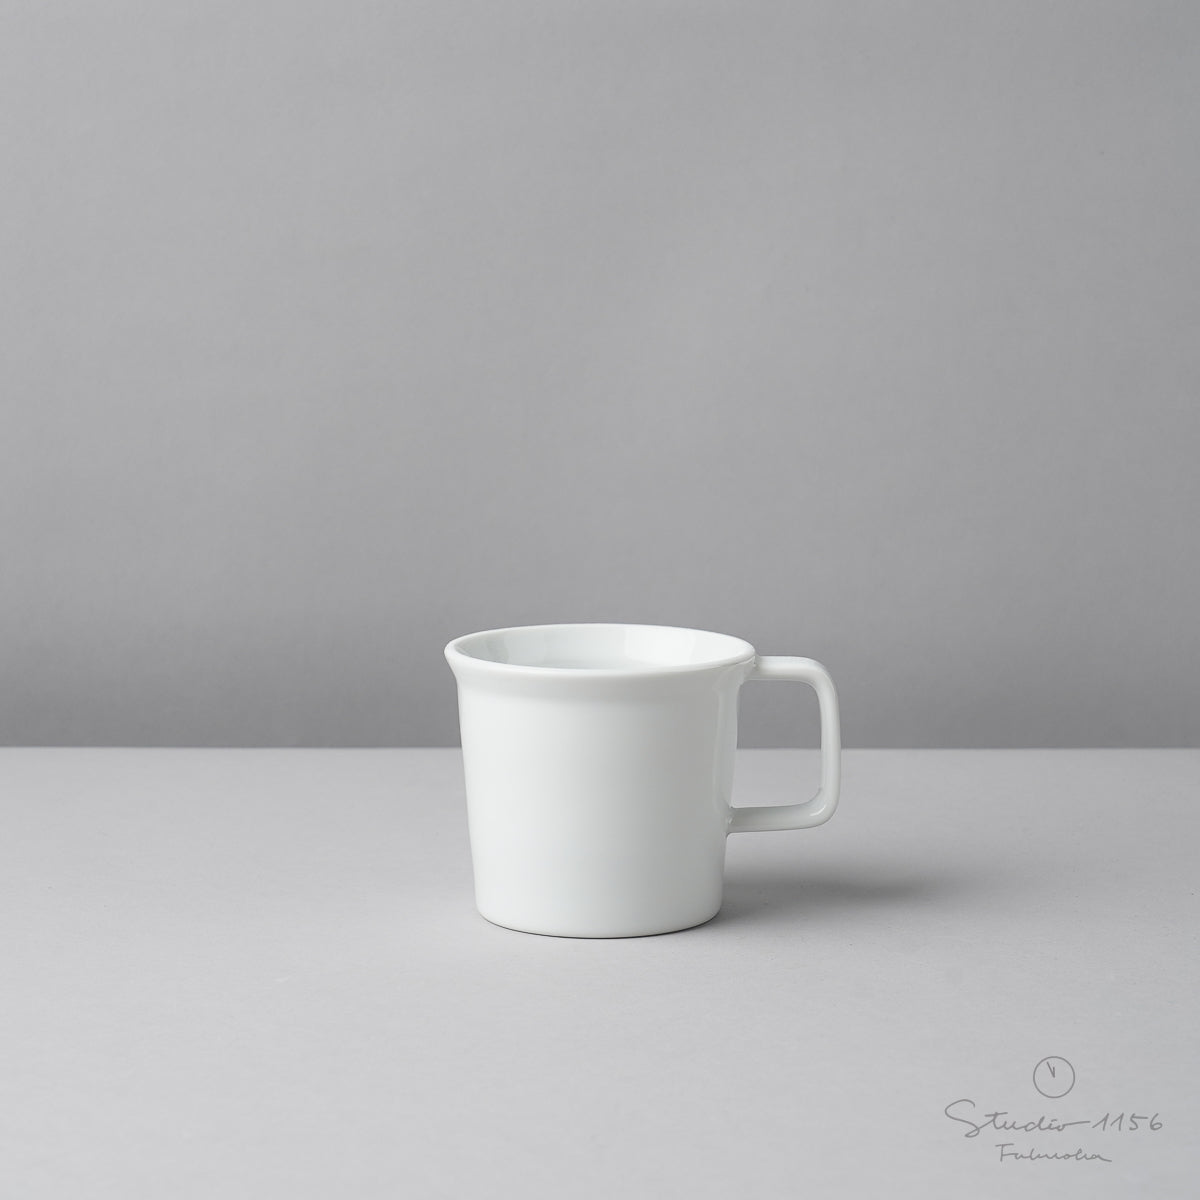 有田焼 コーヒカップ w/ Handle / TY Coffee Cup Handle 190ml White 1616 / Arita Japan Studio1156